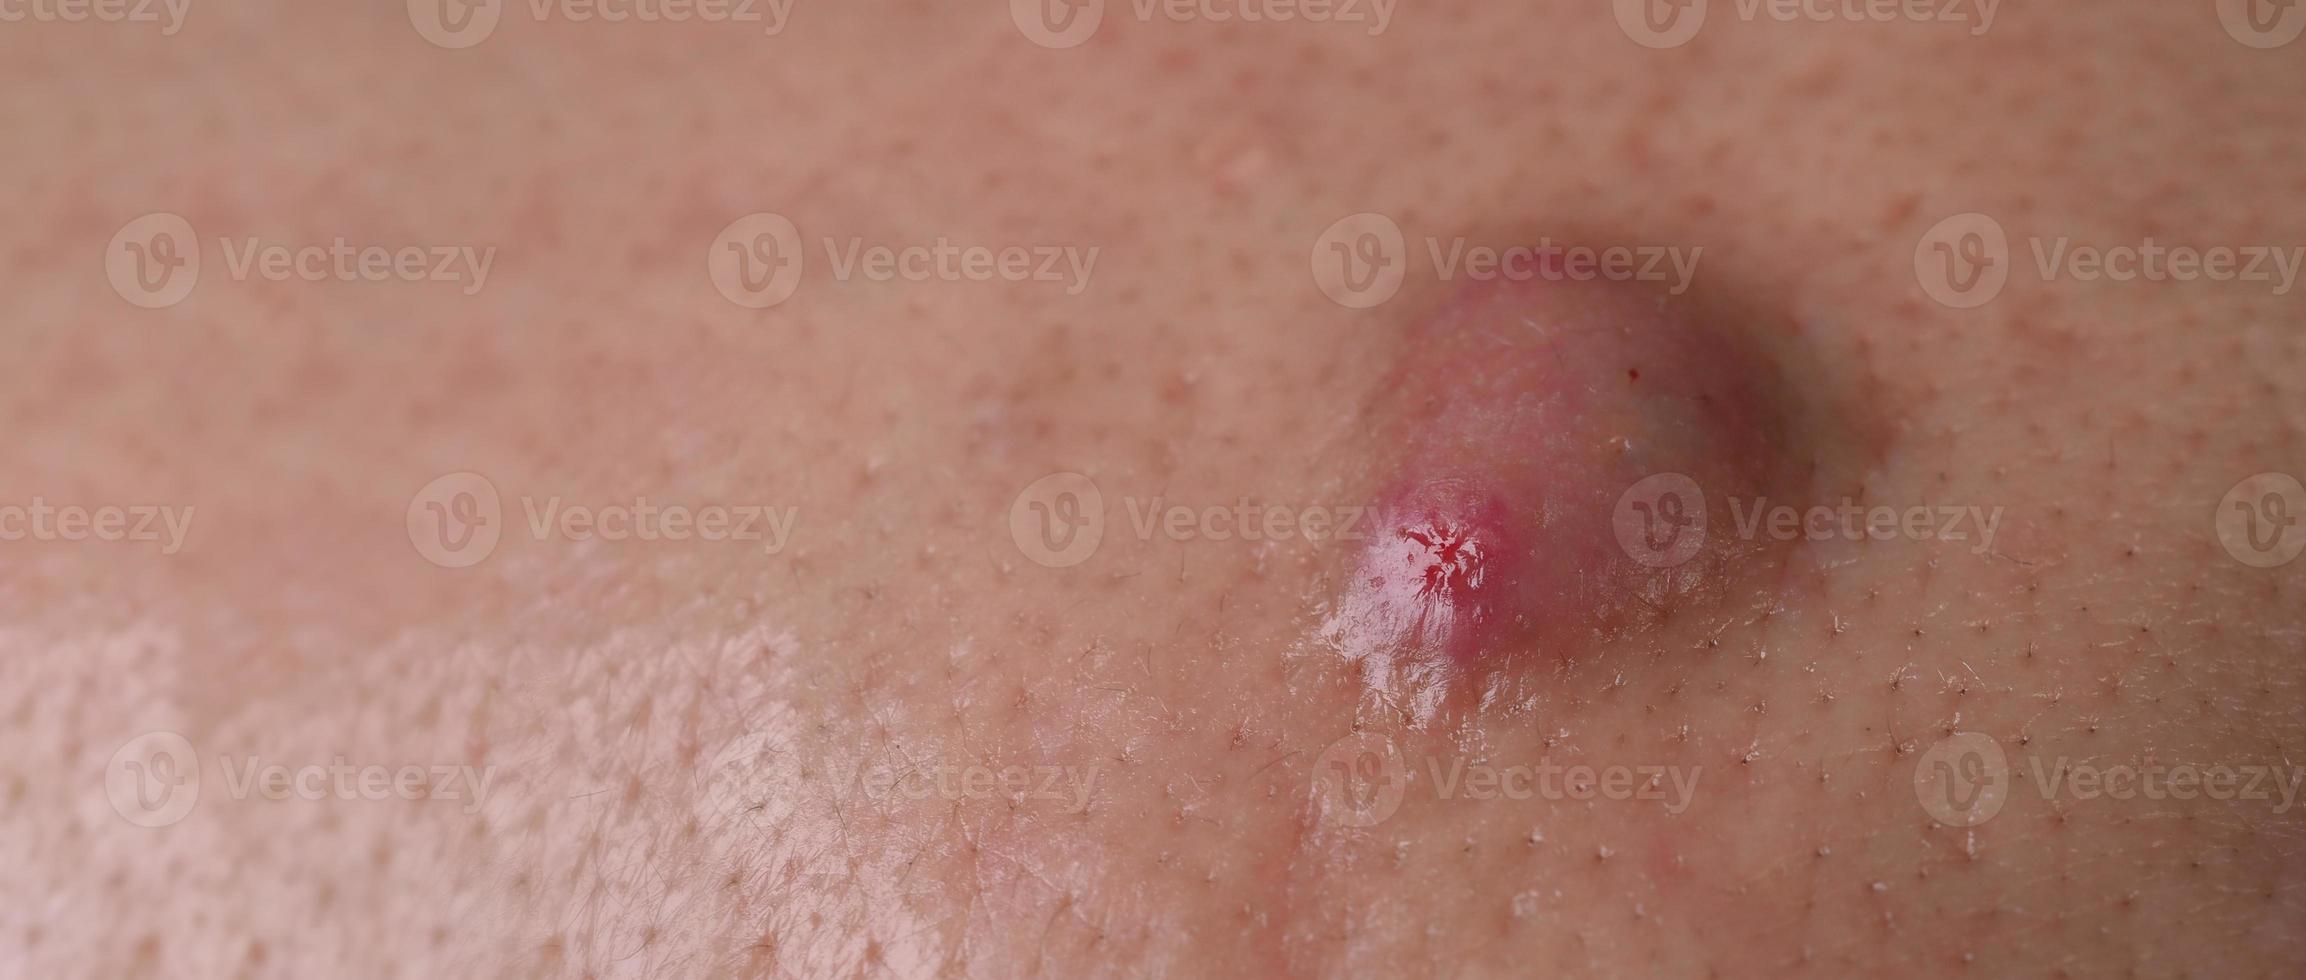 Absceso de quiste de acné grande o área inflamada de úlcera dentro del tejido de la piel de la cara. foto